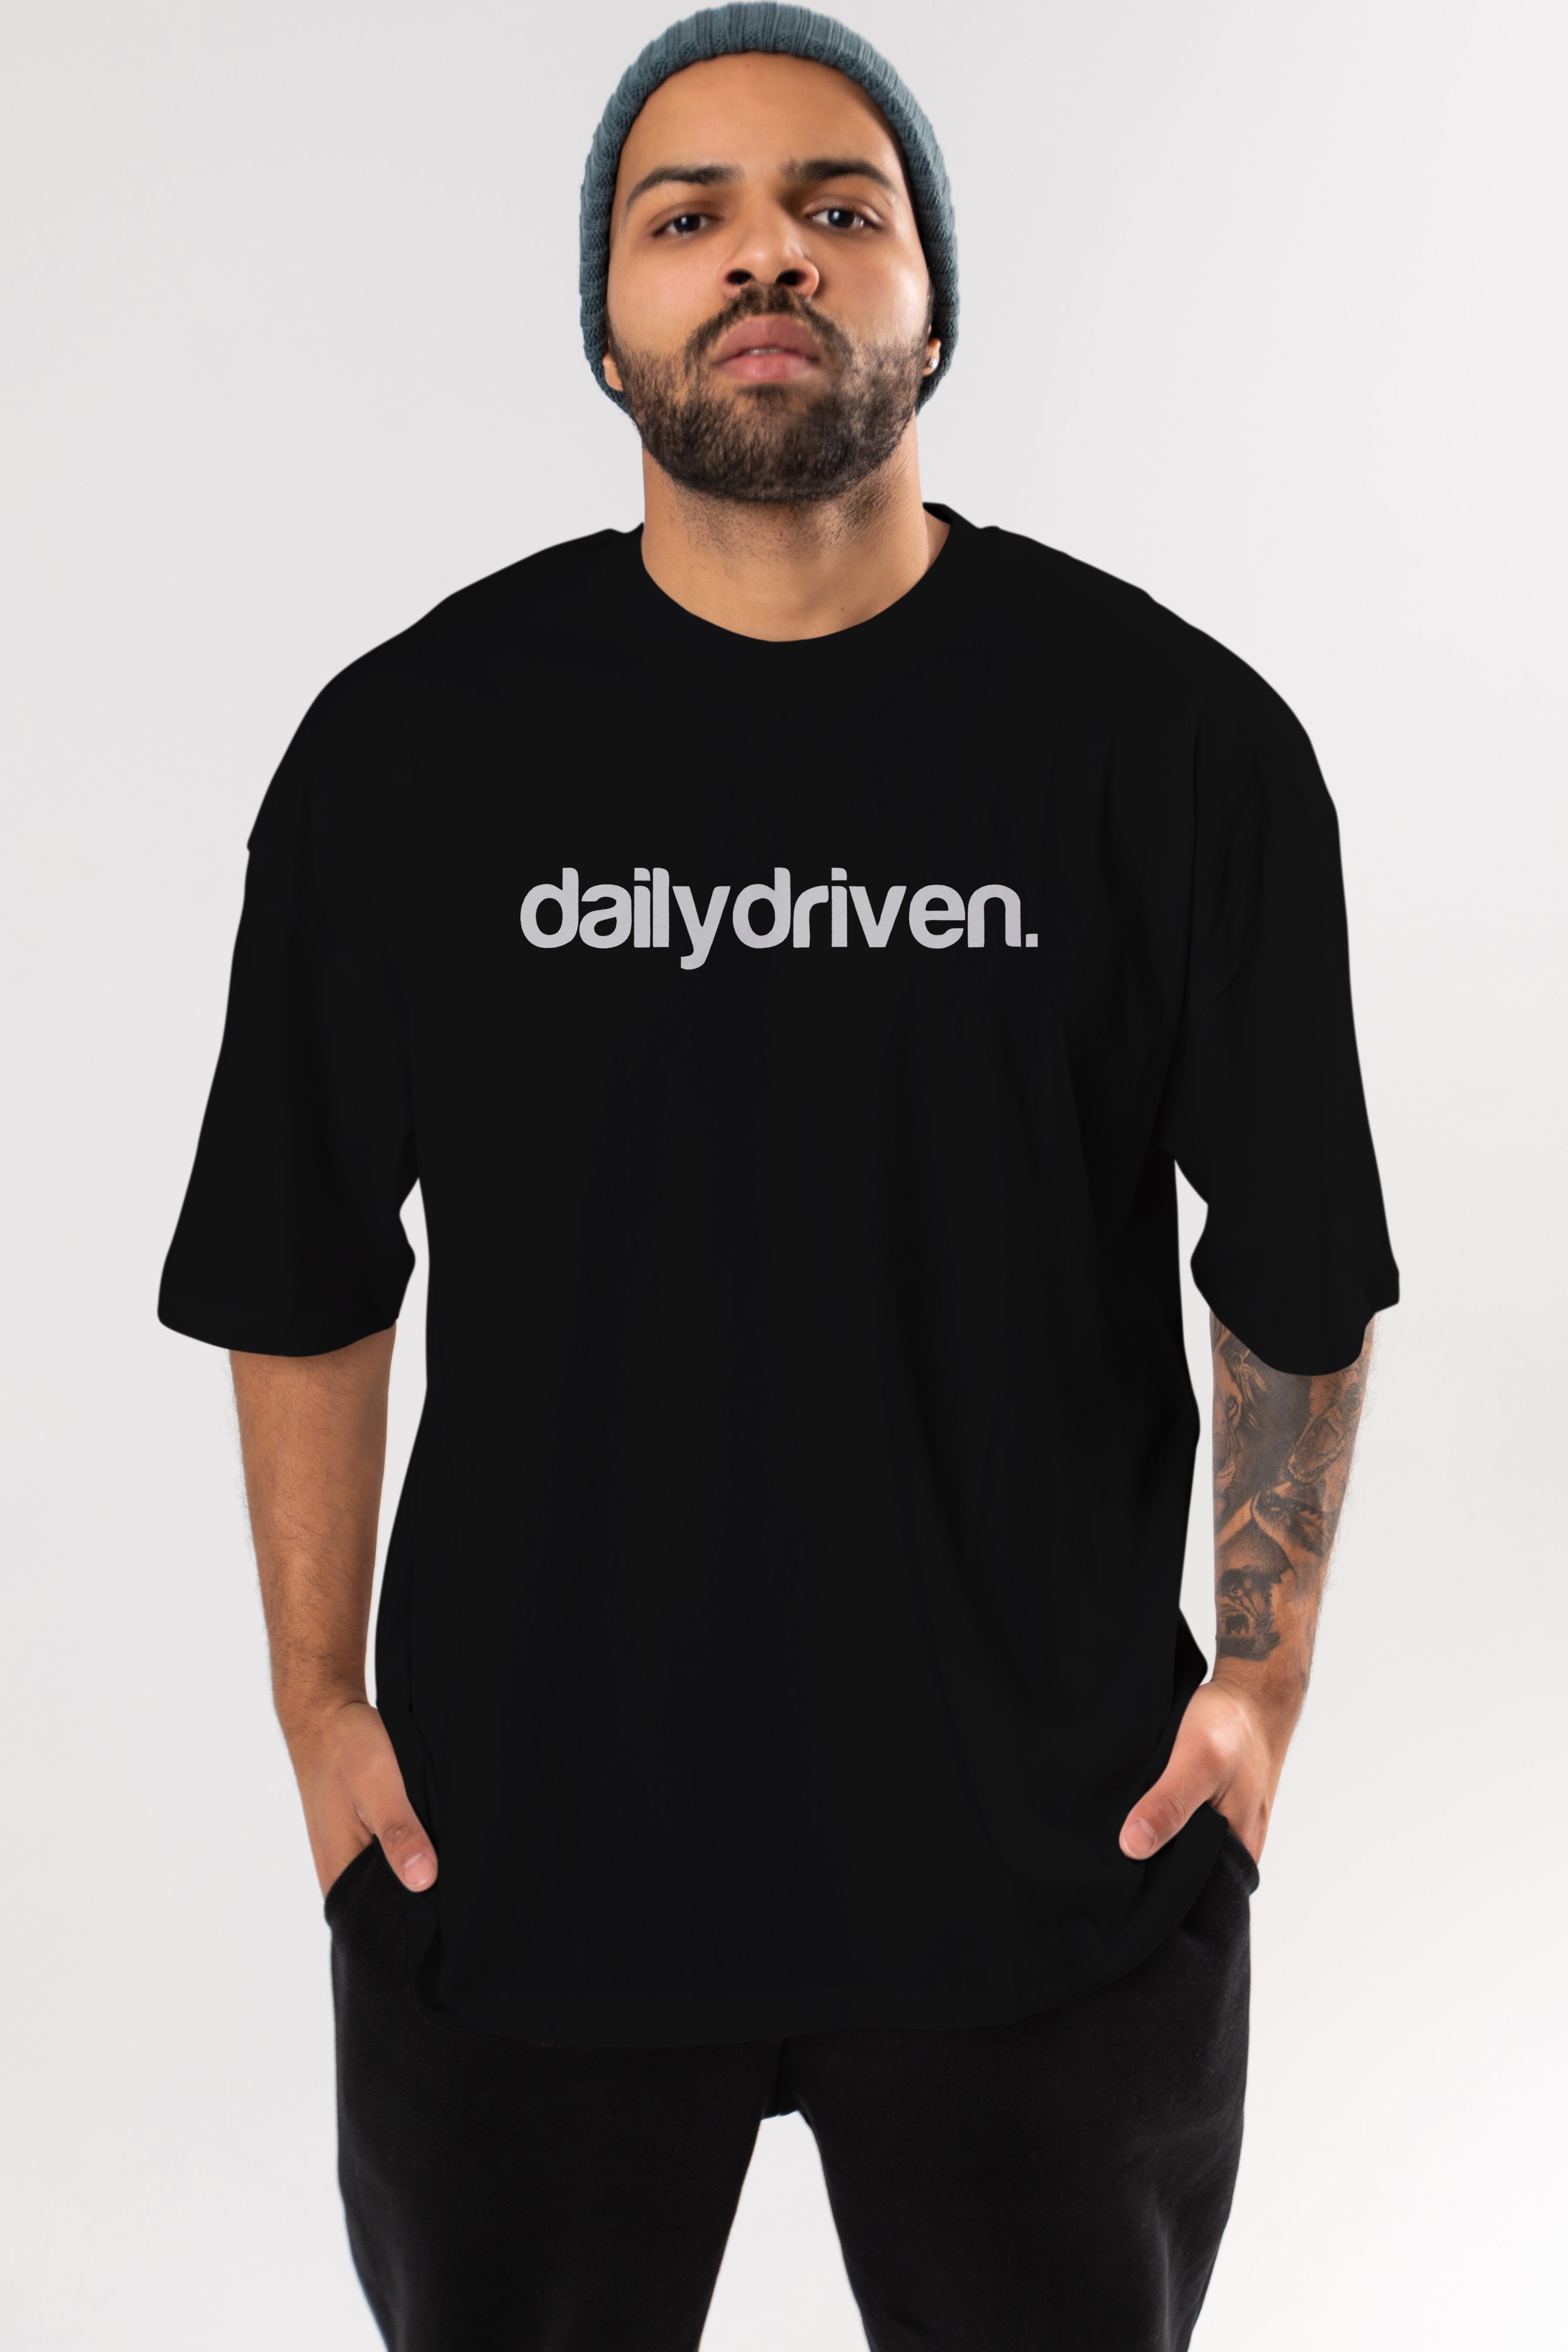 Dailydriven Ön Baskılı Oversize t-shirt %100 pamuk Erkek Kadın Unisex